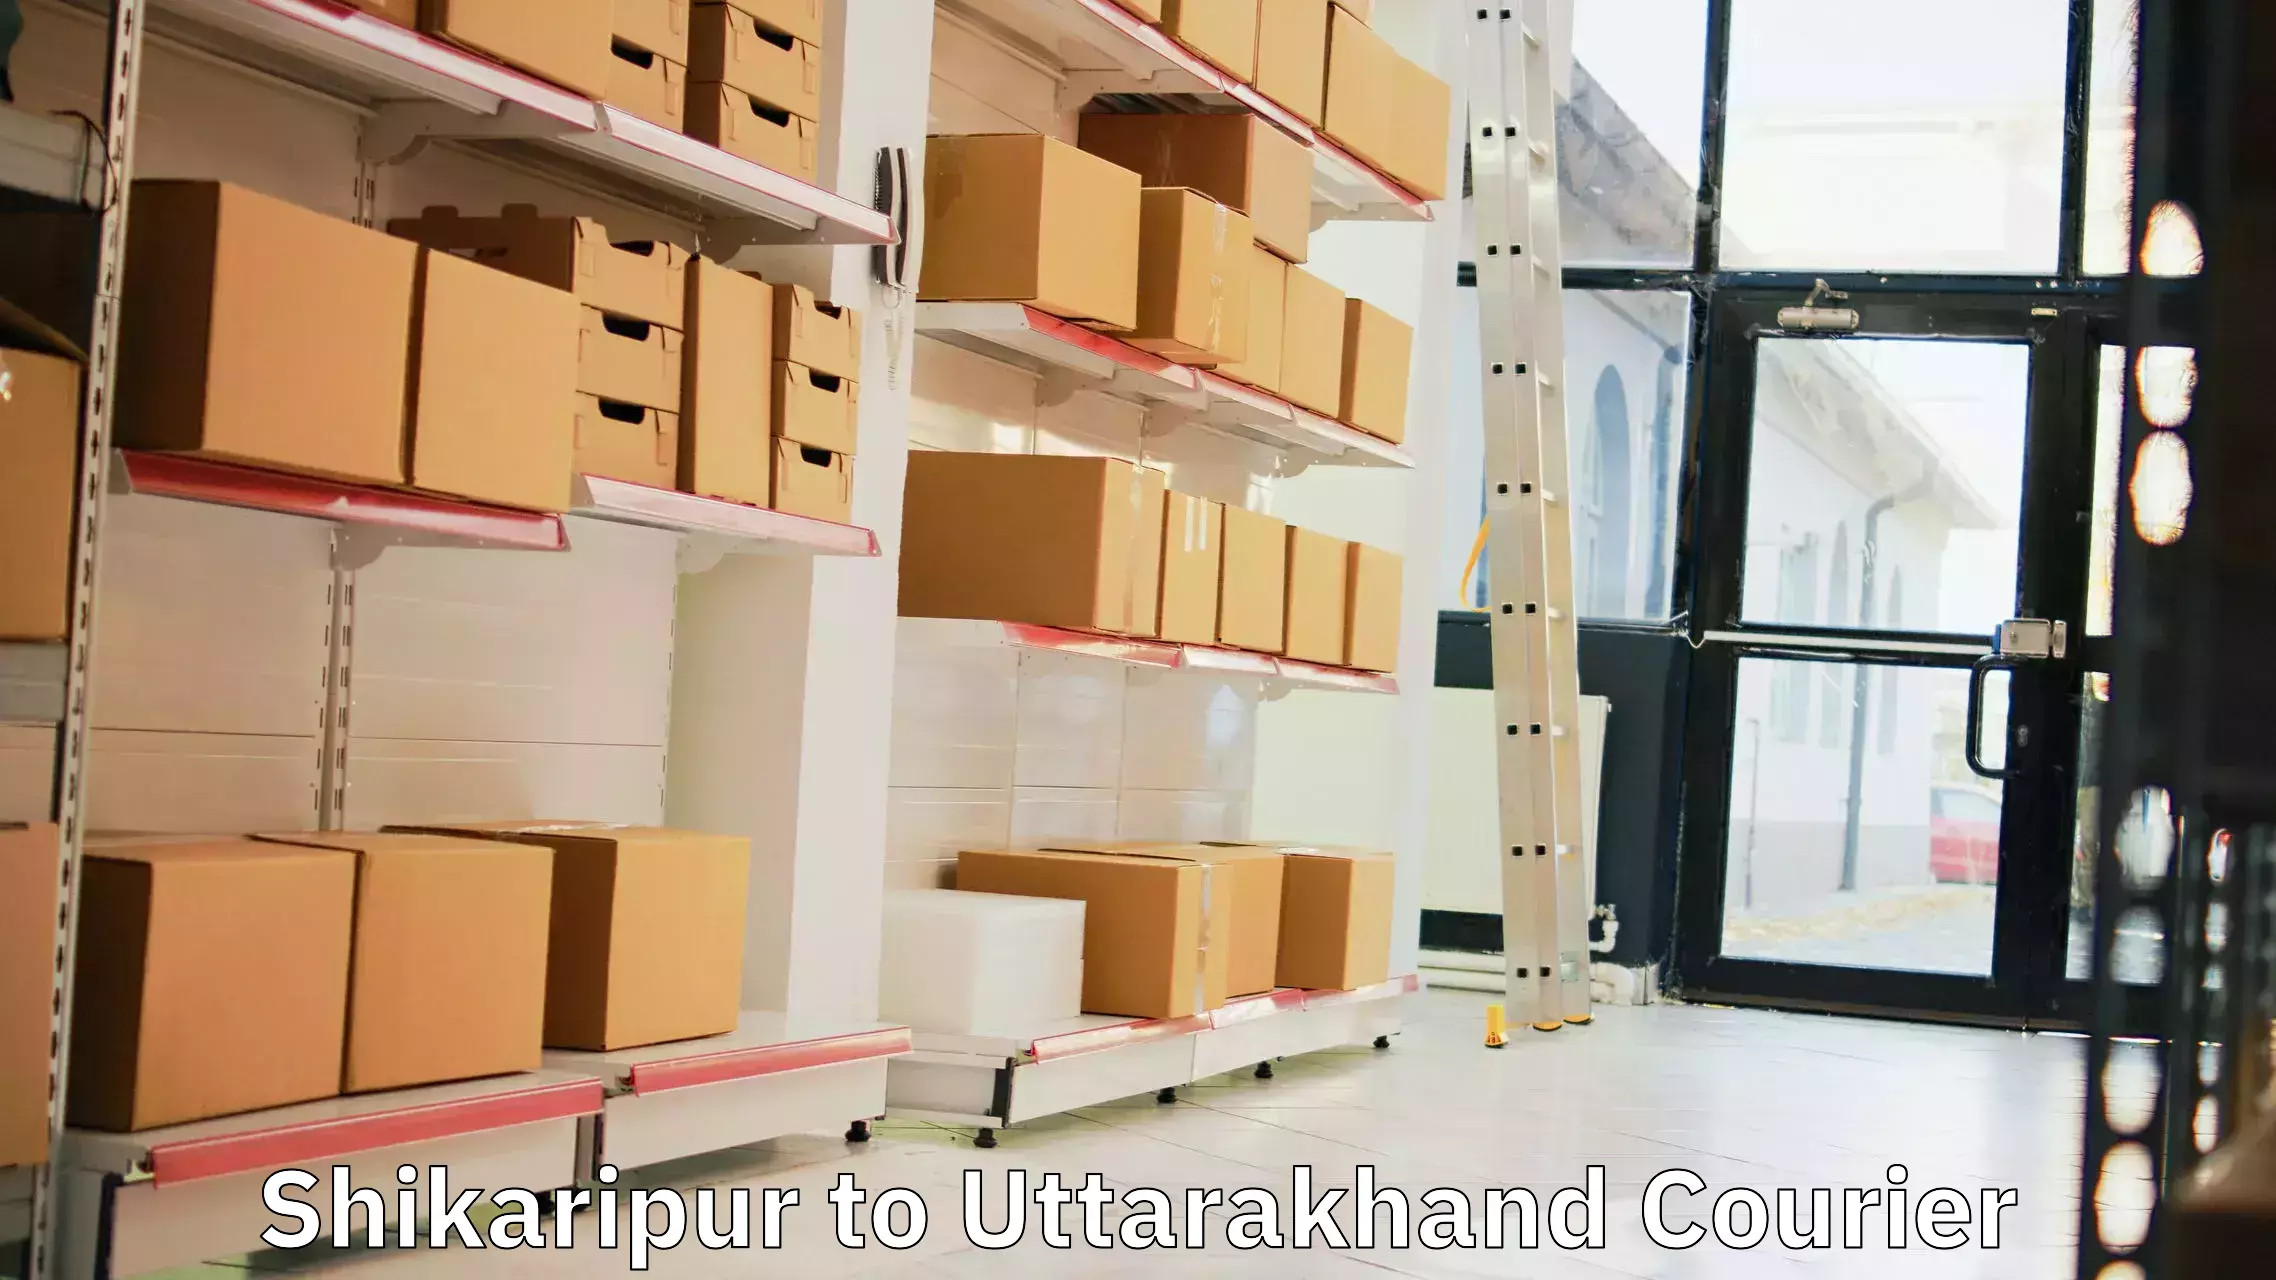 Customized shipping options Shikaripur to Dehradun